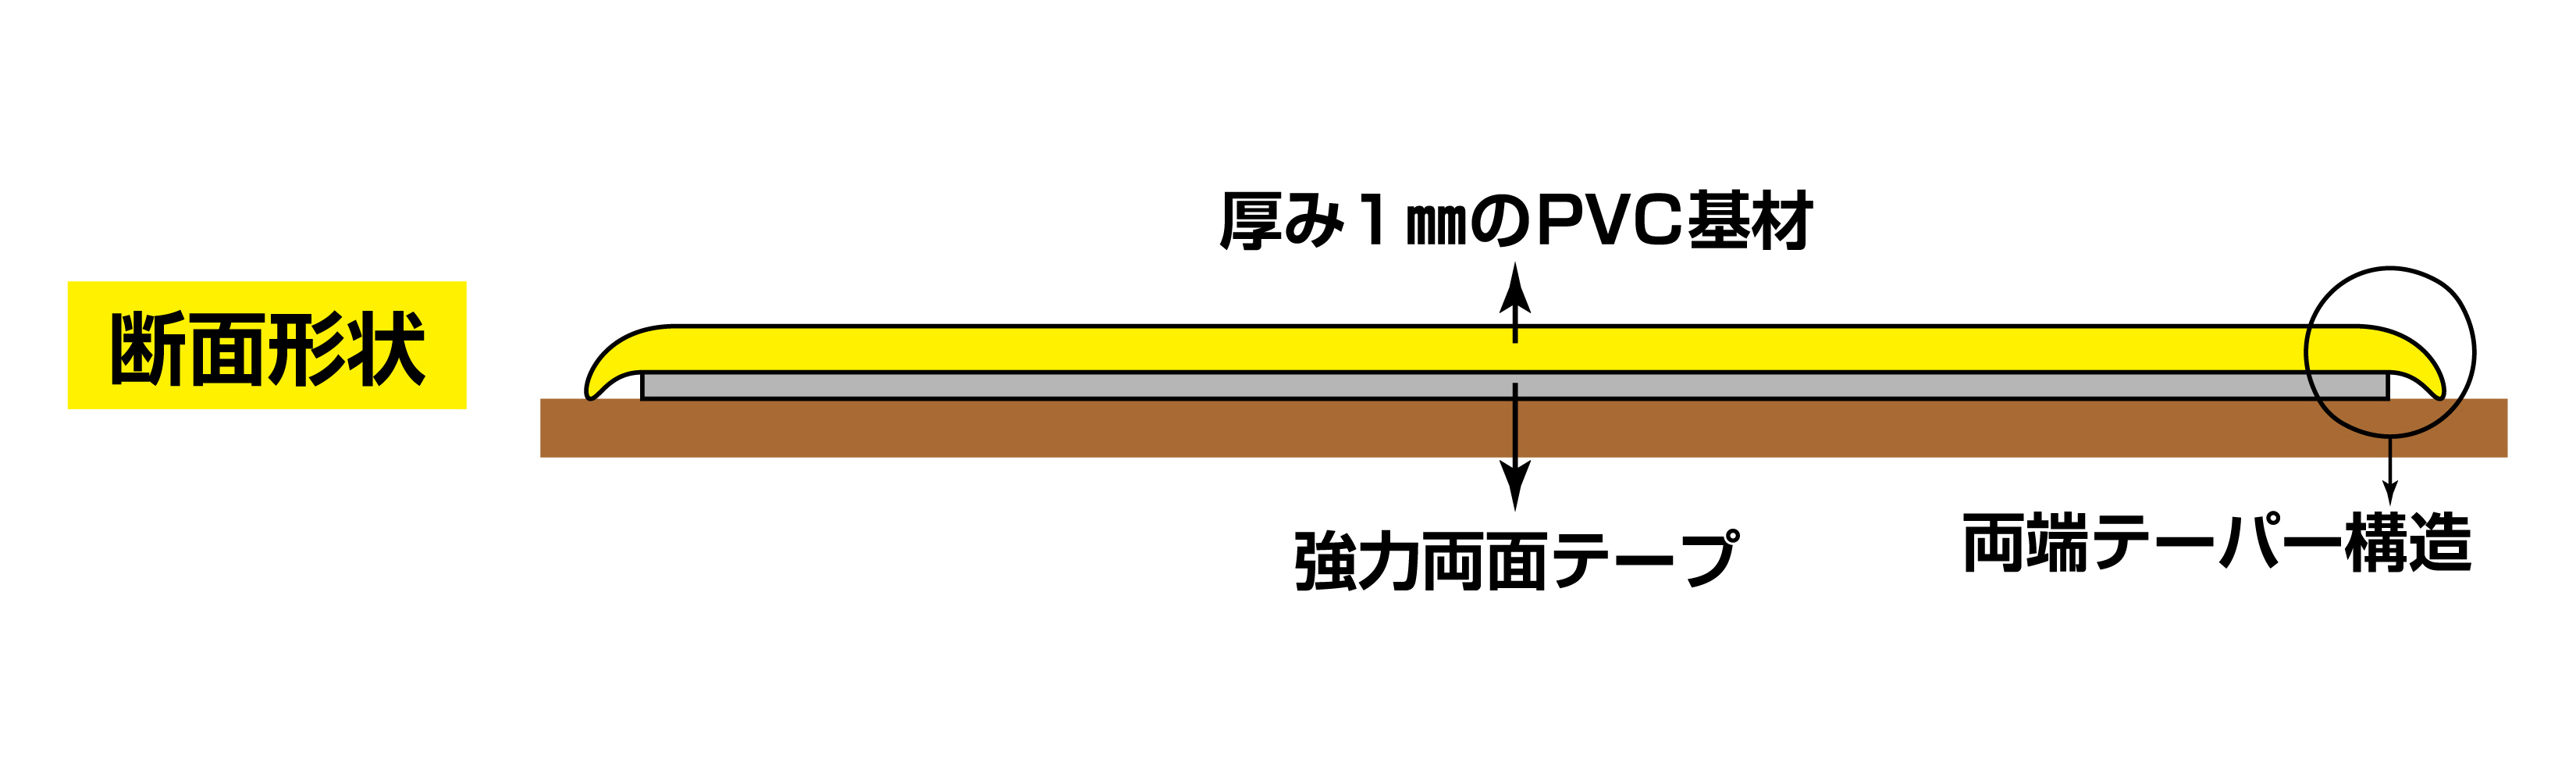 高耐久ラインテープ 403074 JU-510R,（安全標識・安全用品 日本緑十字社）,の通販 詳細情報,電設資材・電線・ケーブル・安全用品  ネット通販 Watanabe 電設資材 電線 ケーブル ネット 通販 Watanabe